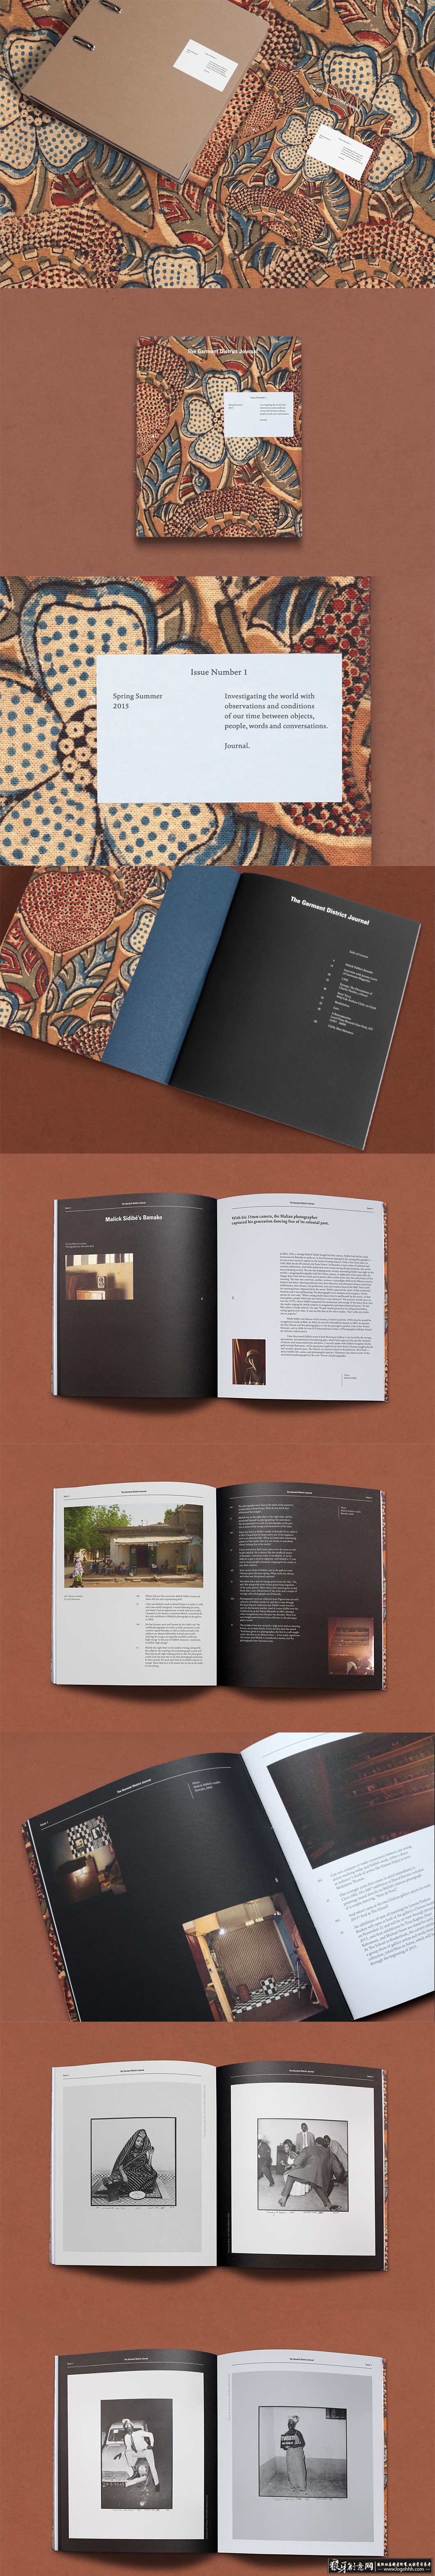 创意画册 创意图形设计 创意画册设计 画册封面设计 高档画册设计